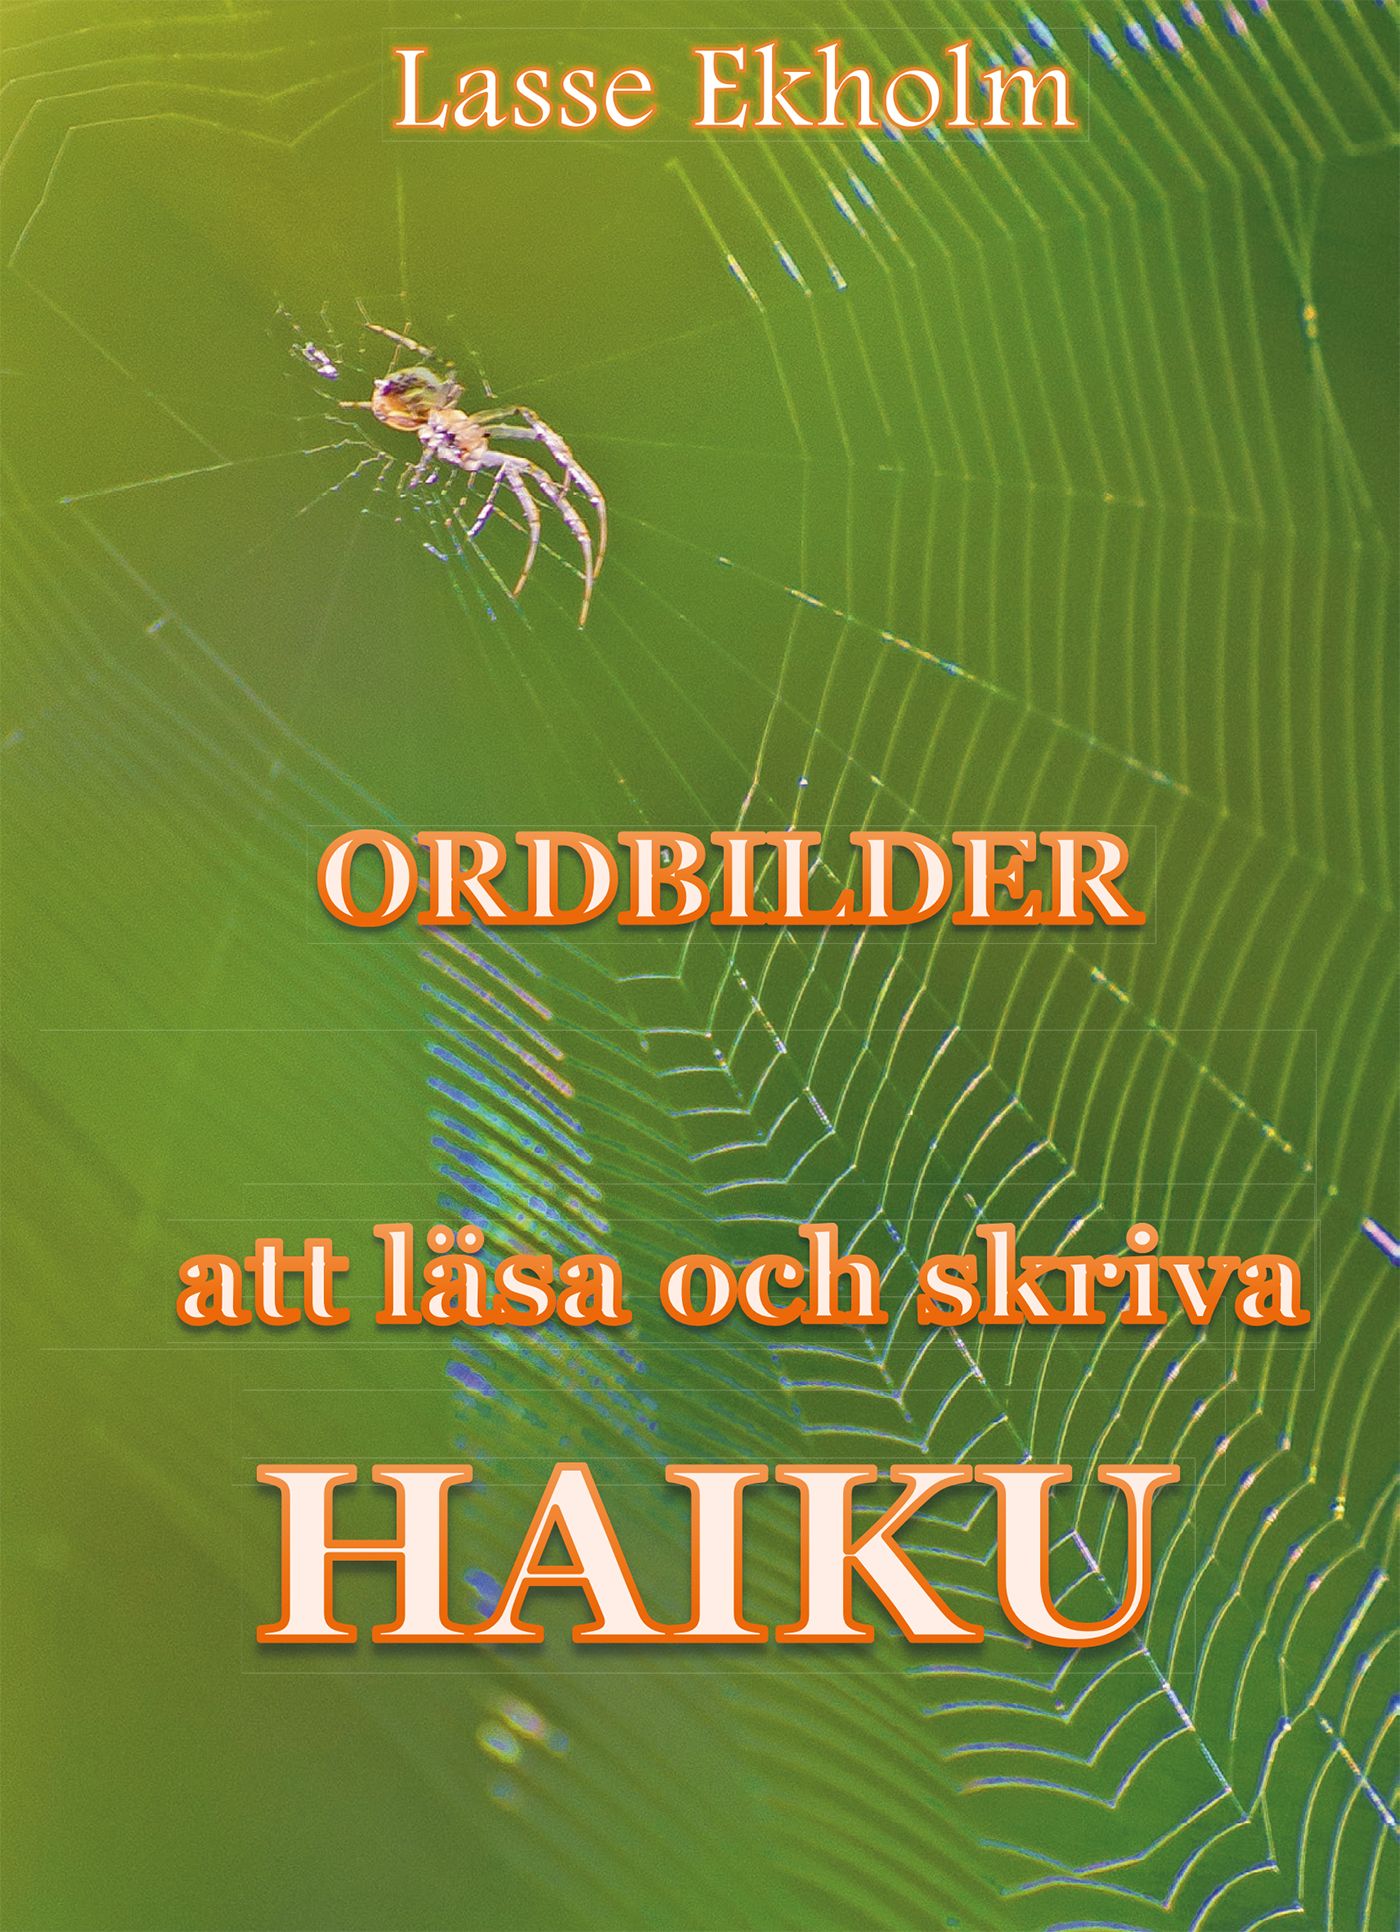 Ordbilder, e-bok av Lasse Ekholm